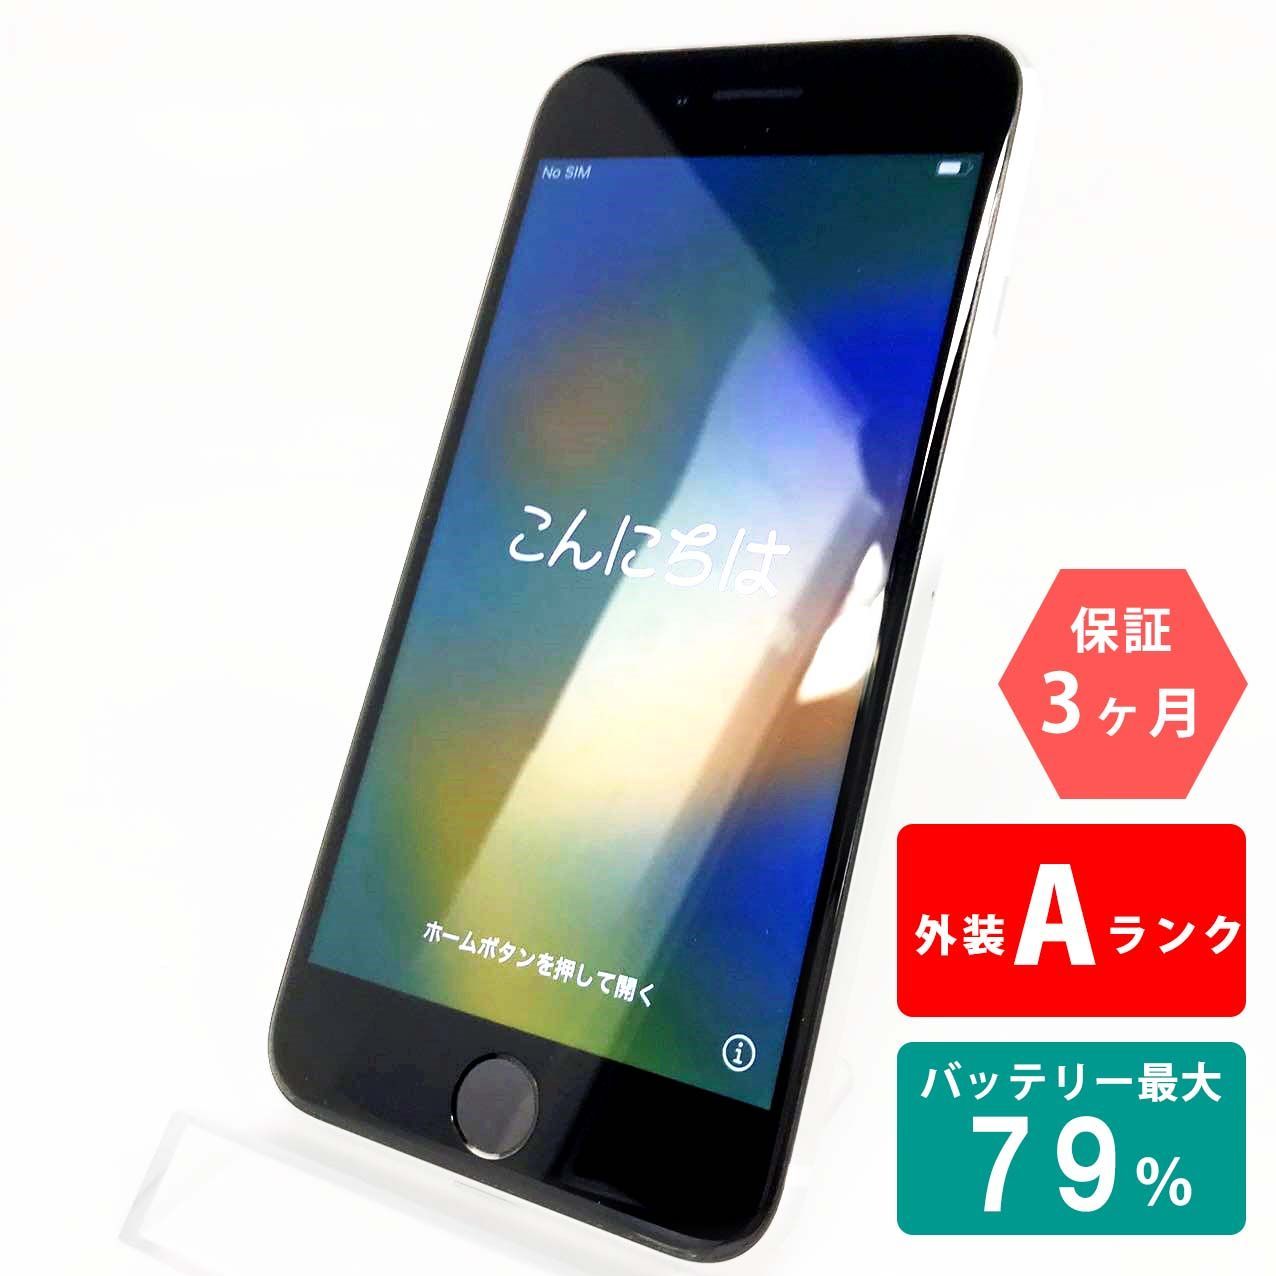 iPhone SE(第2世代) 64GB ホワイト Aランク 超美品 SIMフリー Apple ...